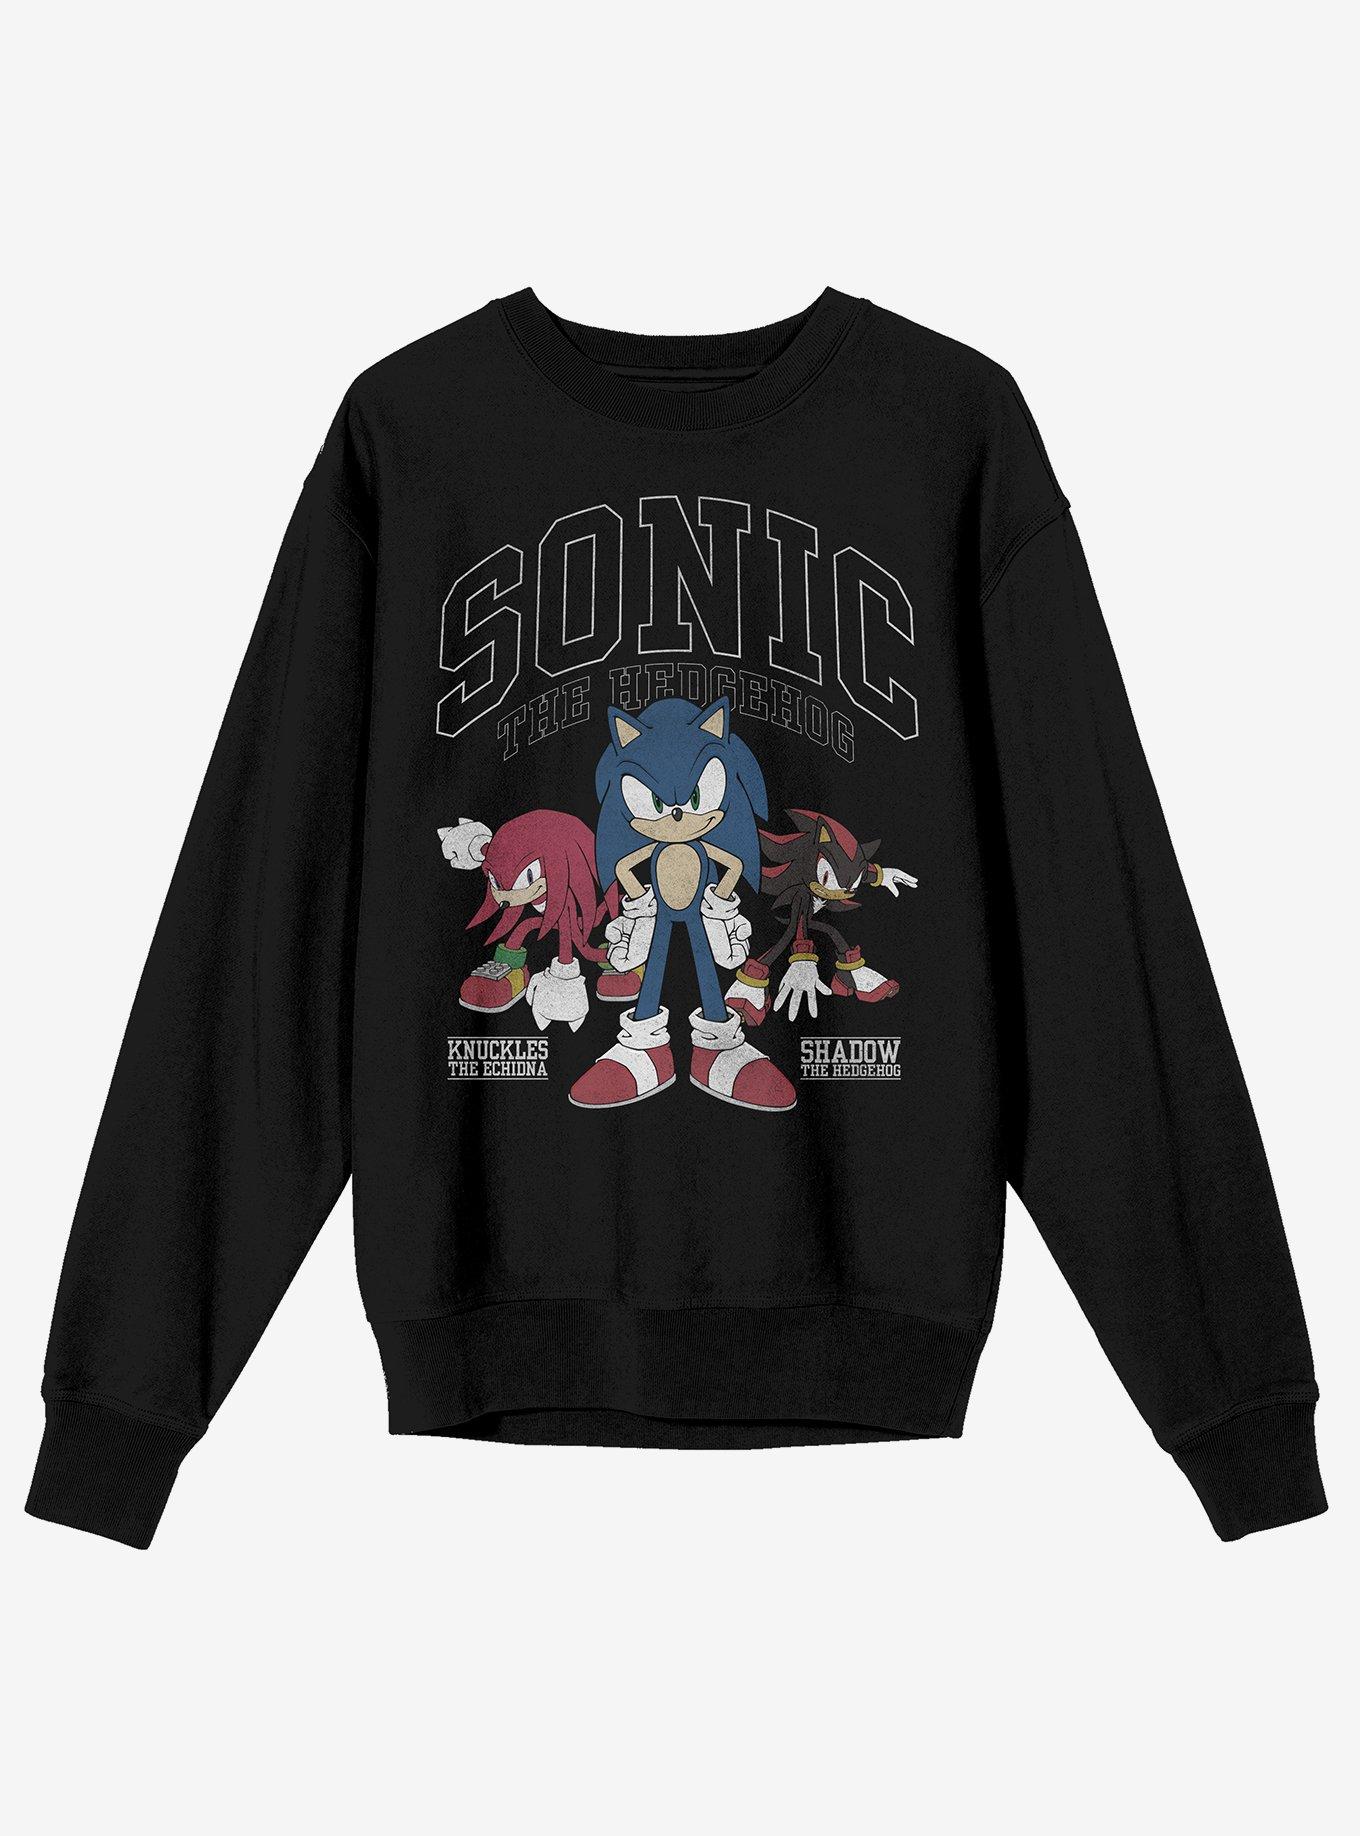 Sonic The Hedgehog Tonal Trio Sweatshirt